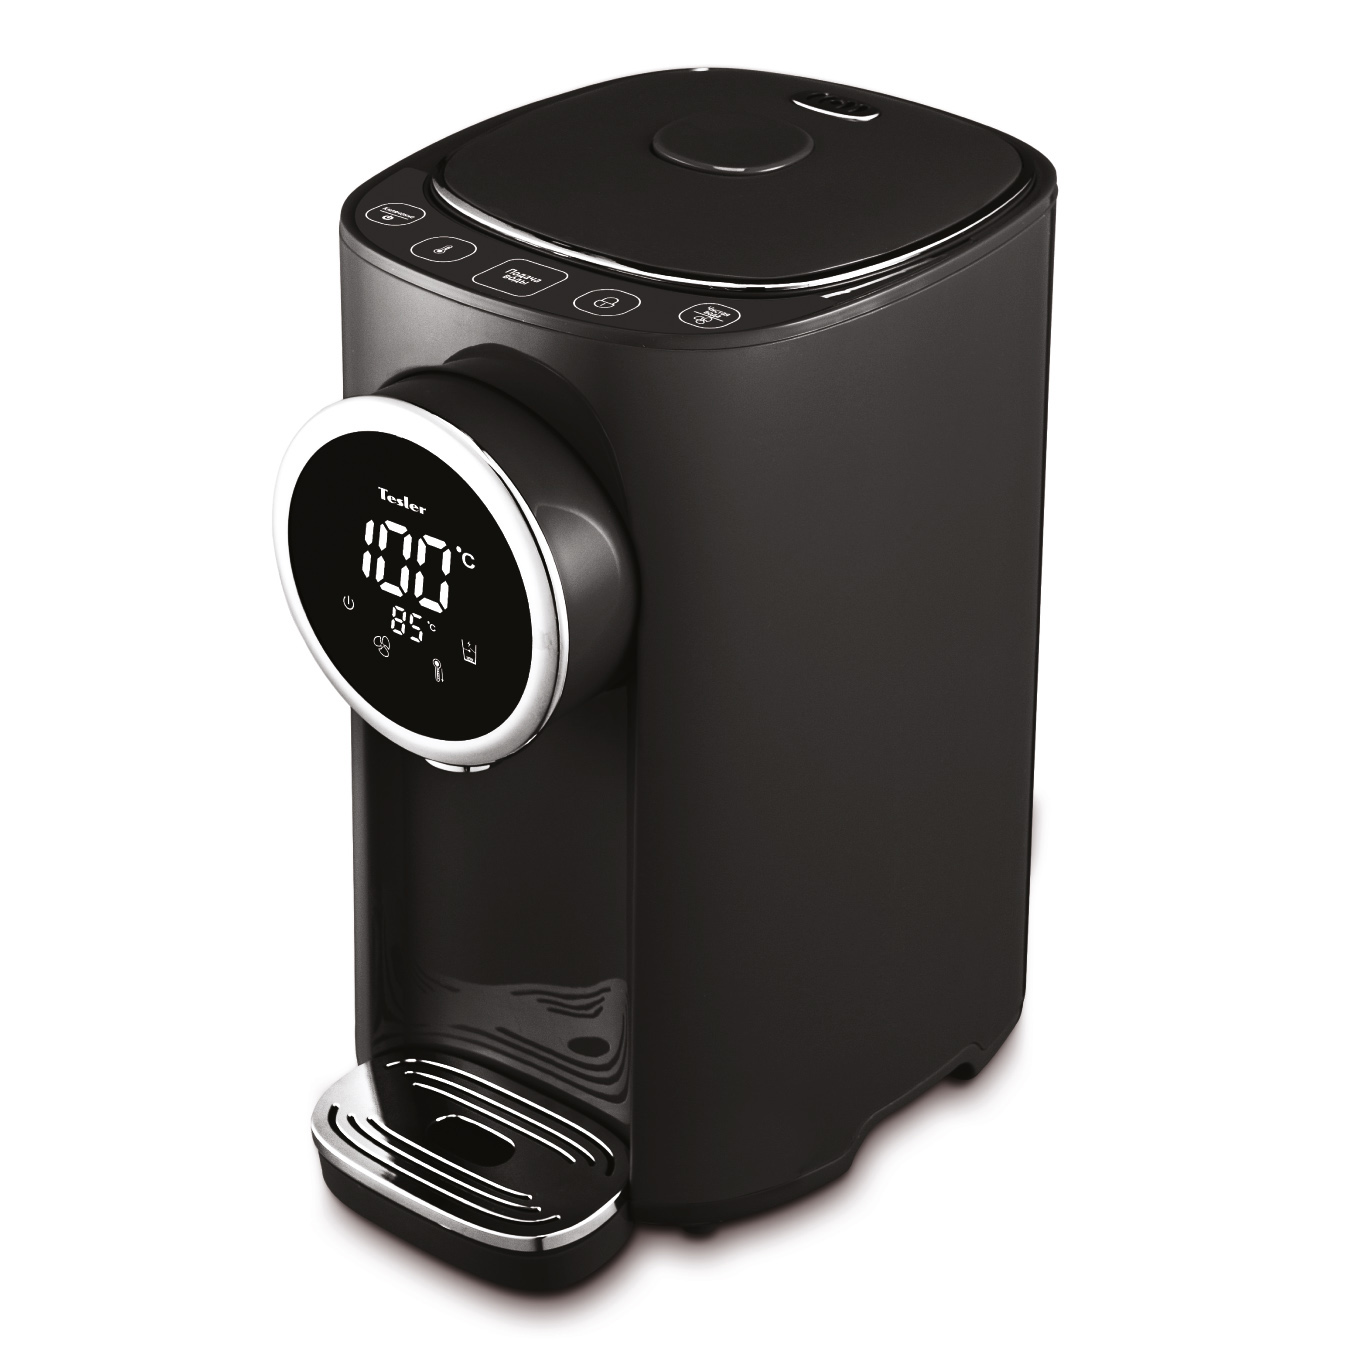 Термопот Tesler TP-5055 Black 5 литров, 1200 Вт, быстрое кипячение/охлаждение